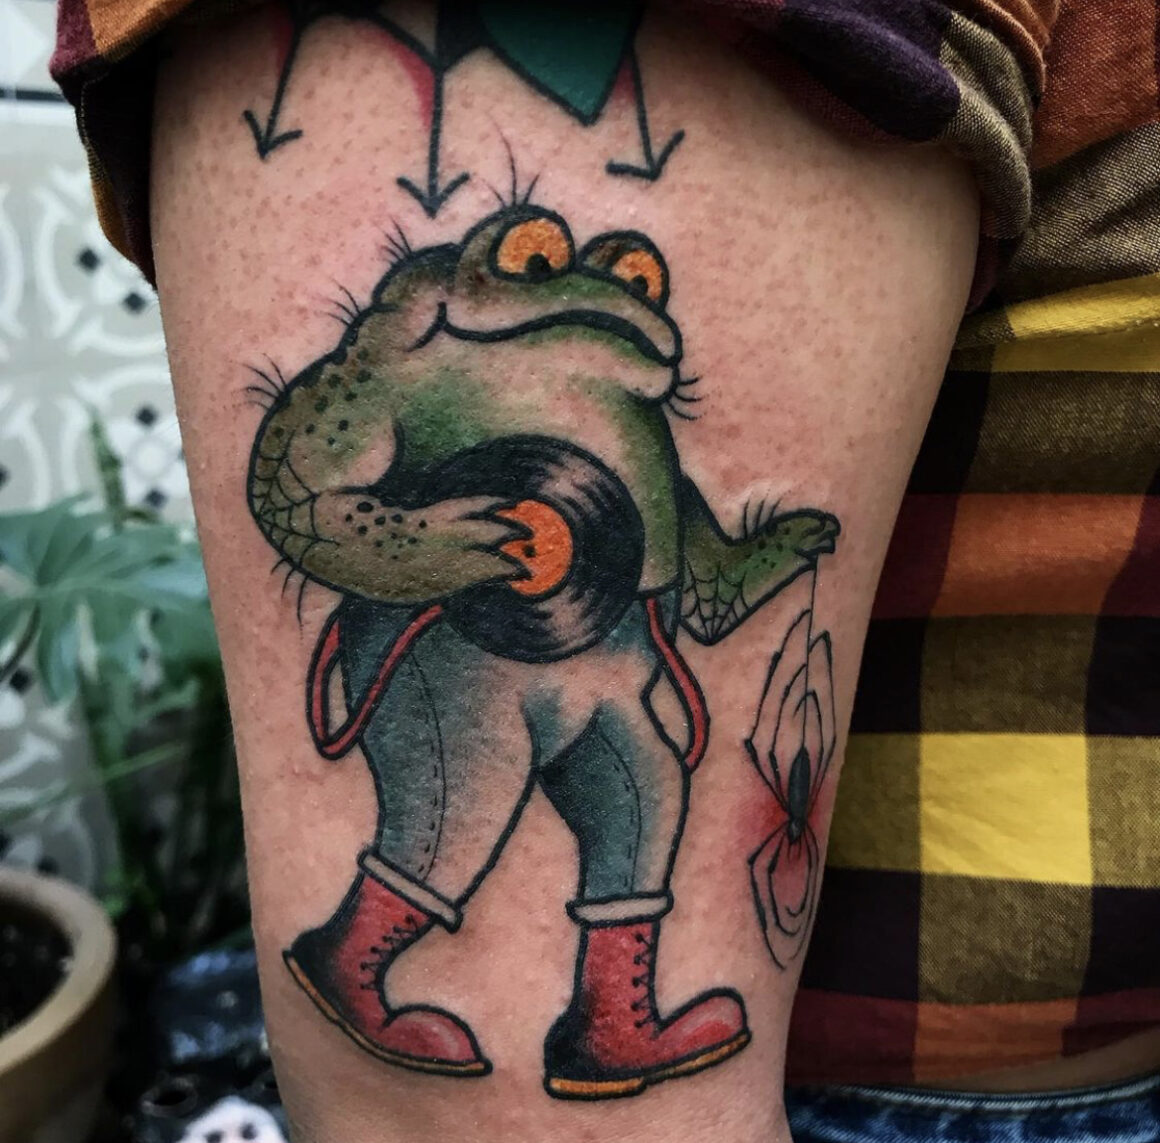 Frog Samurai tattoo by Gotch Tattoo  Best Tattoo Ideas Gallery